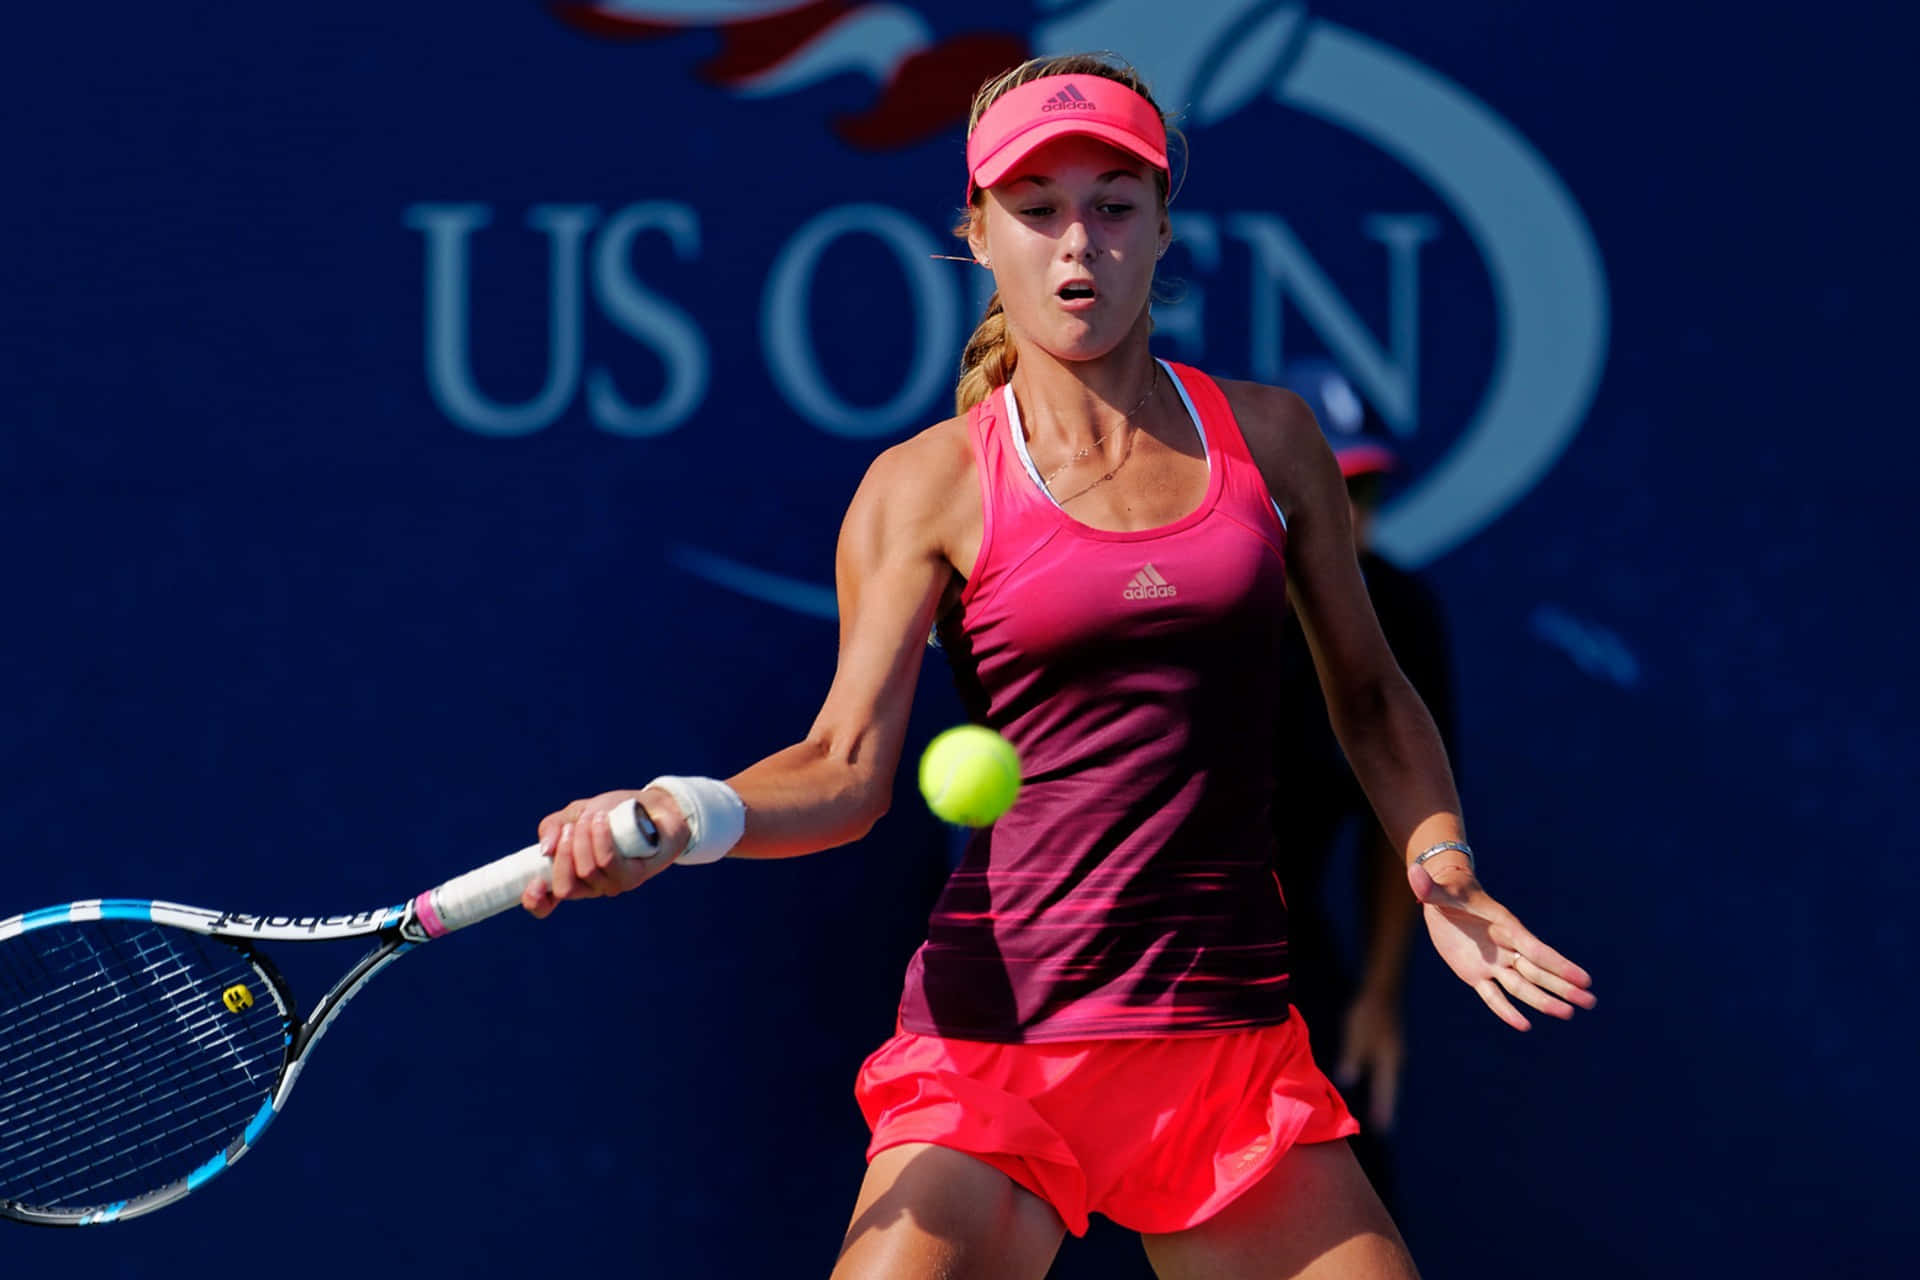 Hdhintergrundbild Von Der Serbischen Tennisspielerin Ana Ivanovic